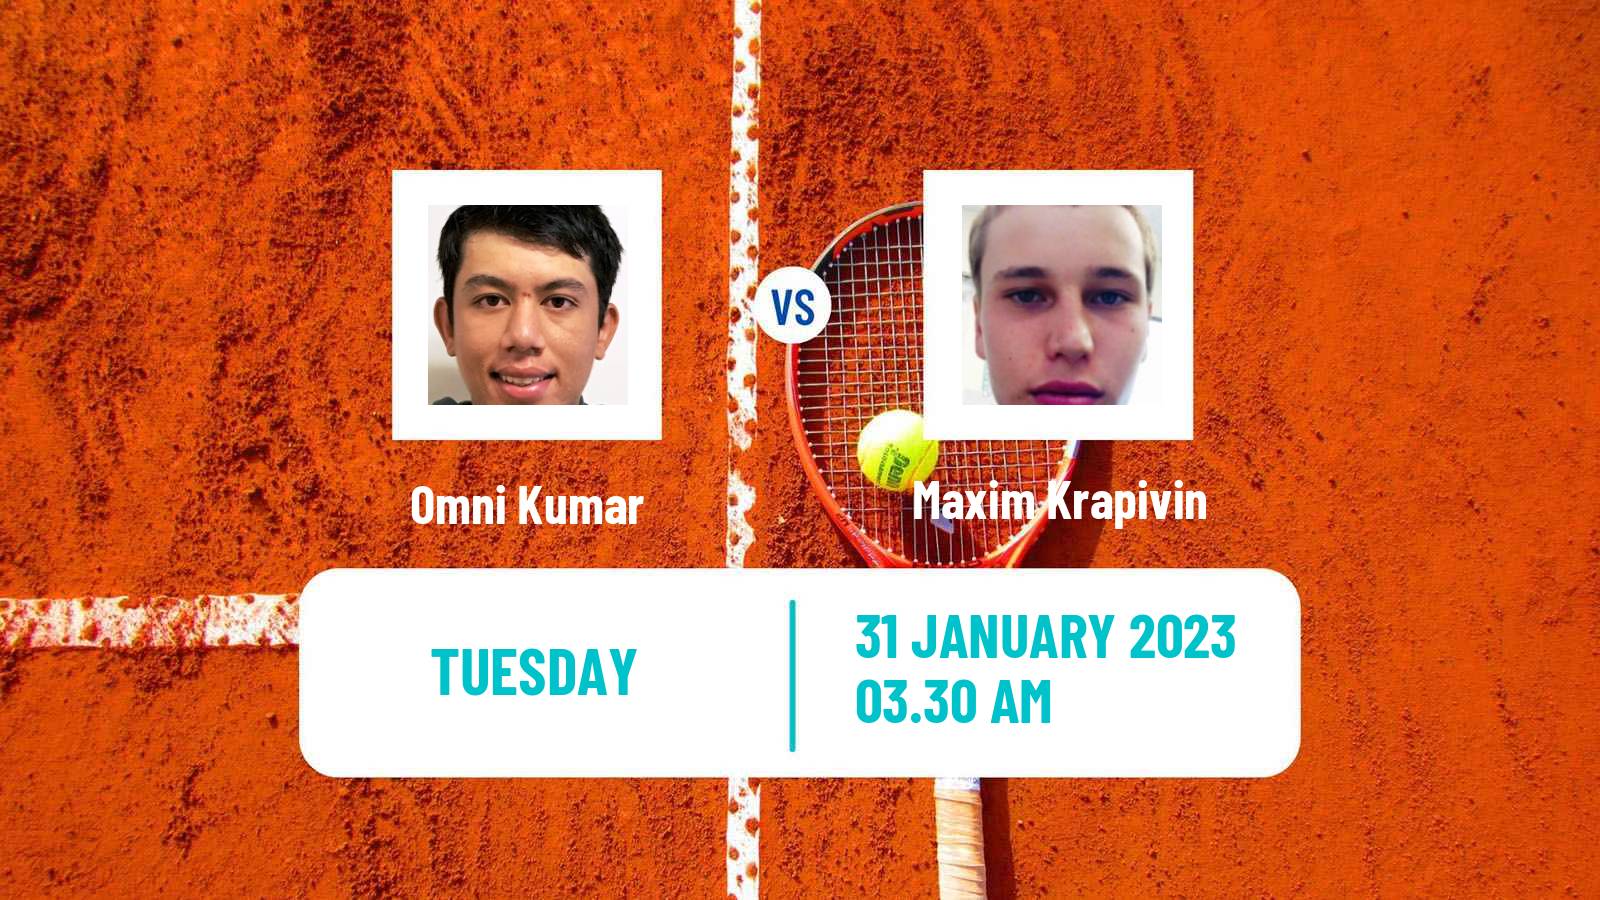 Tennis ITF Tournaments Omni Kumar - Maxim Krapivin